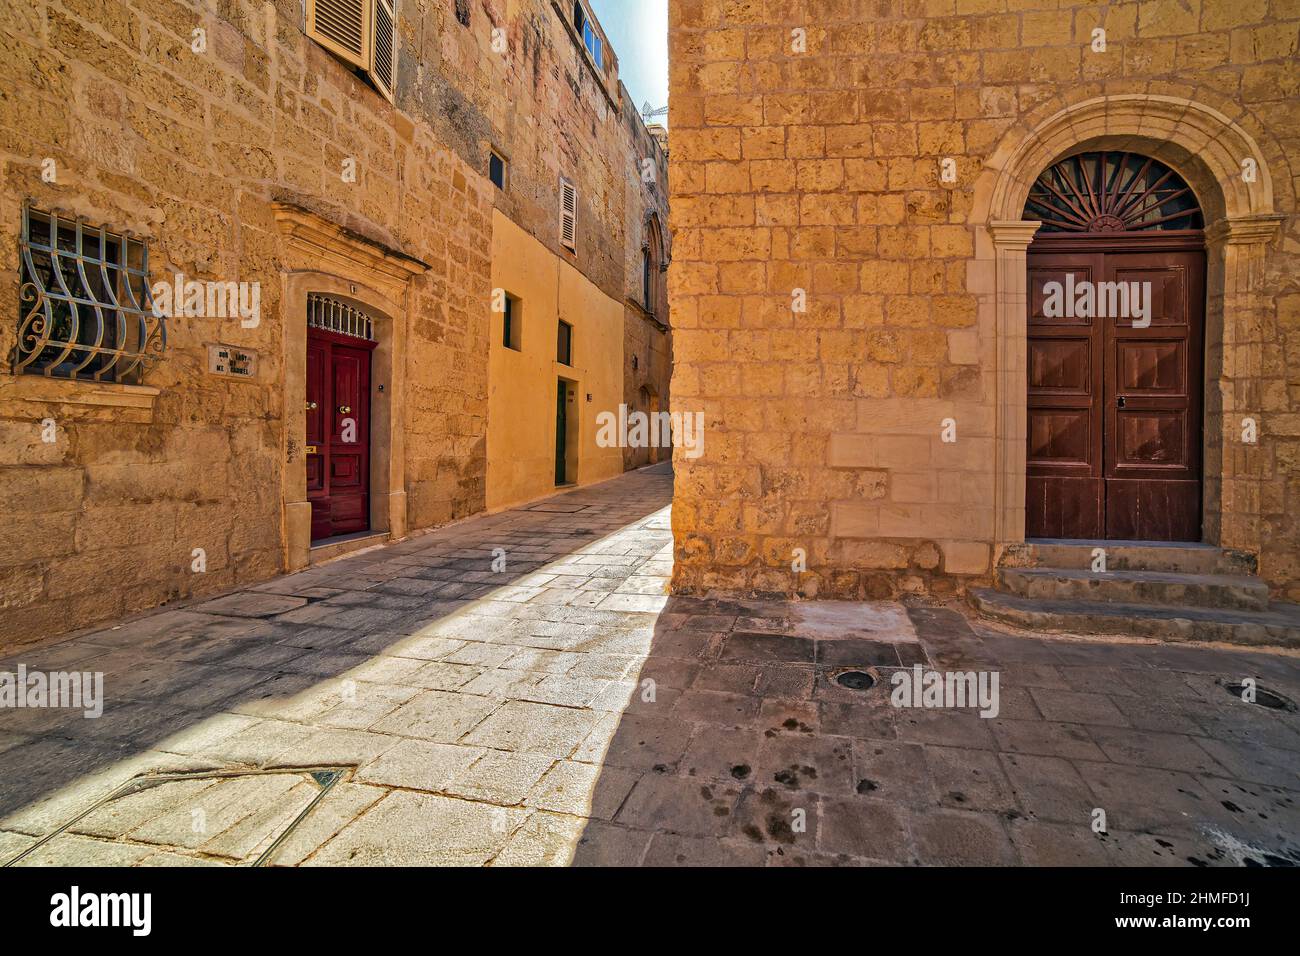 A tranquil street scene in Mdina in Malta Stock Photo